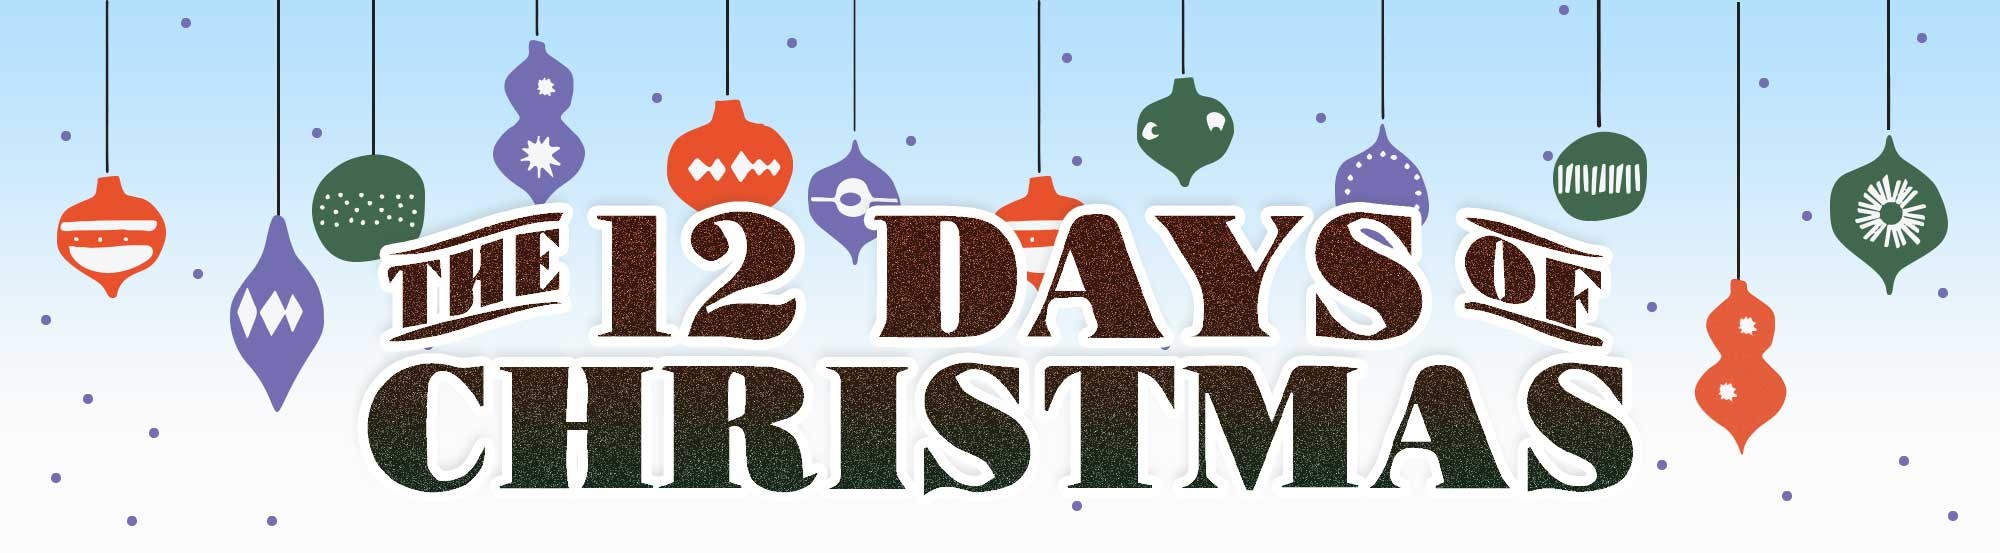 12-days-of-christmas-banner-05.jpg